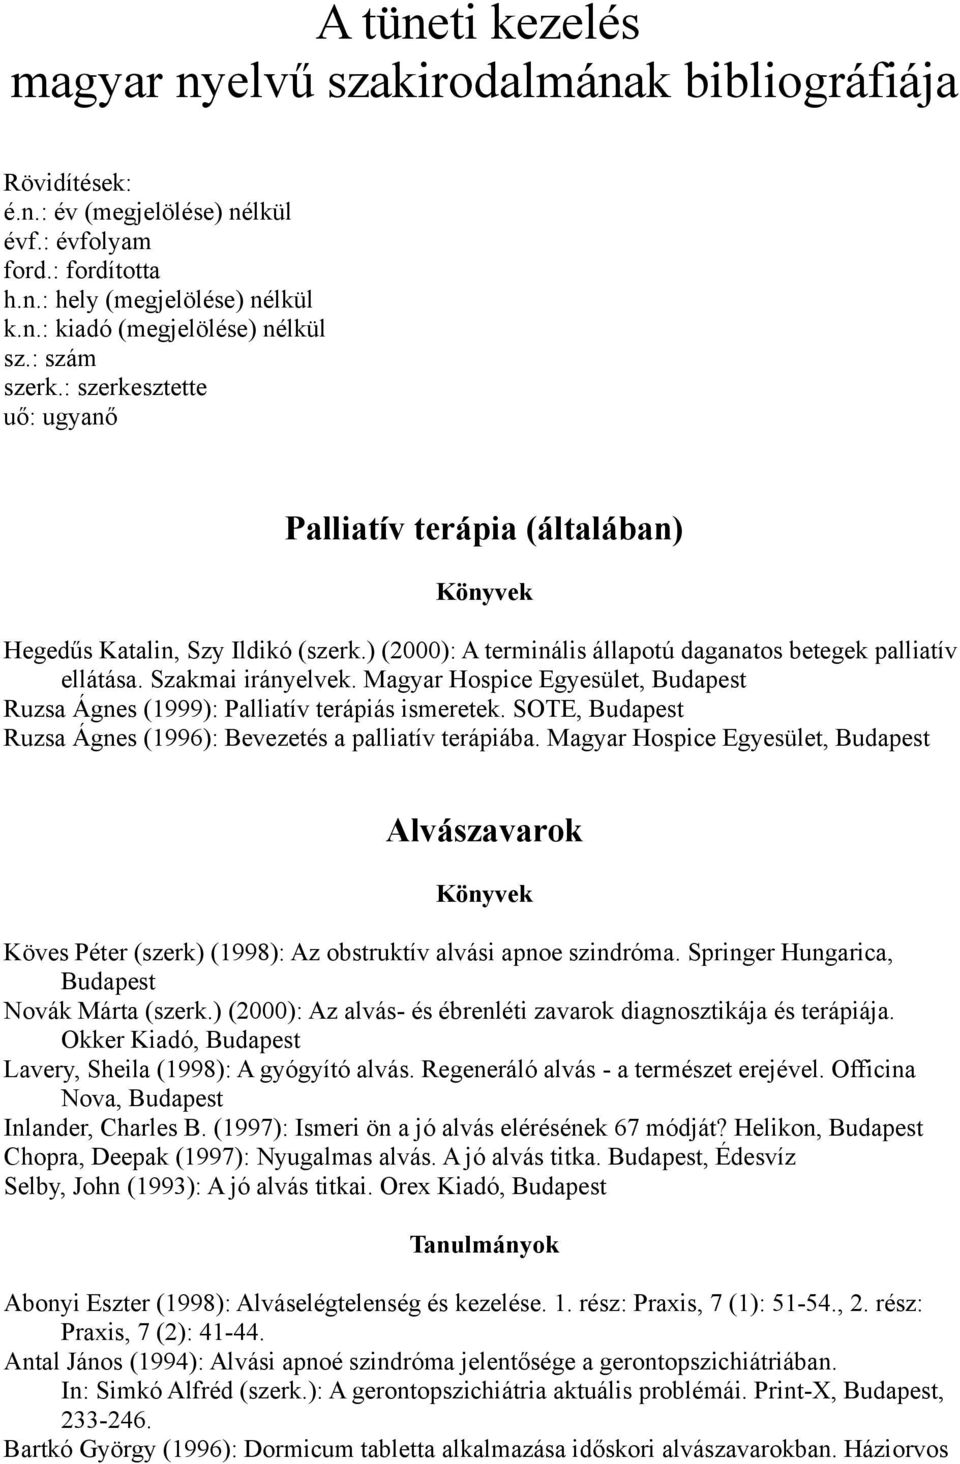 A tüneti kezelés magyar nyelvű szakirodalmának bibliográfiája - PDF  Ingyenes letöltés